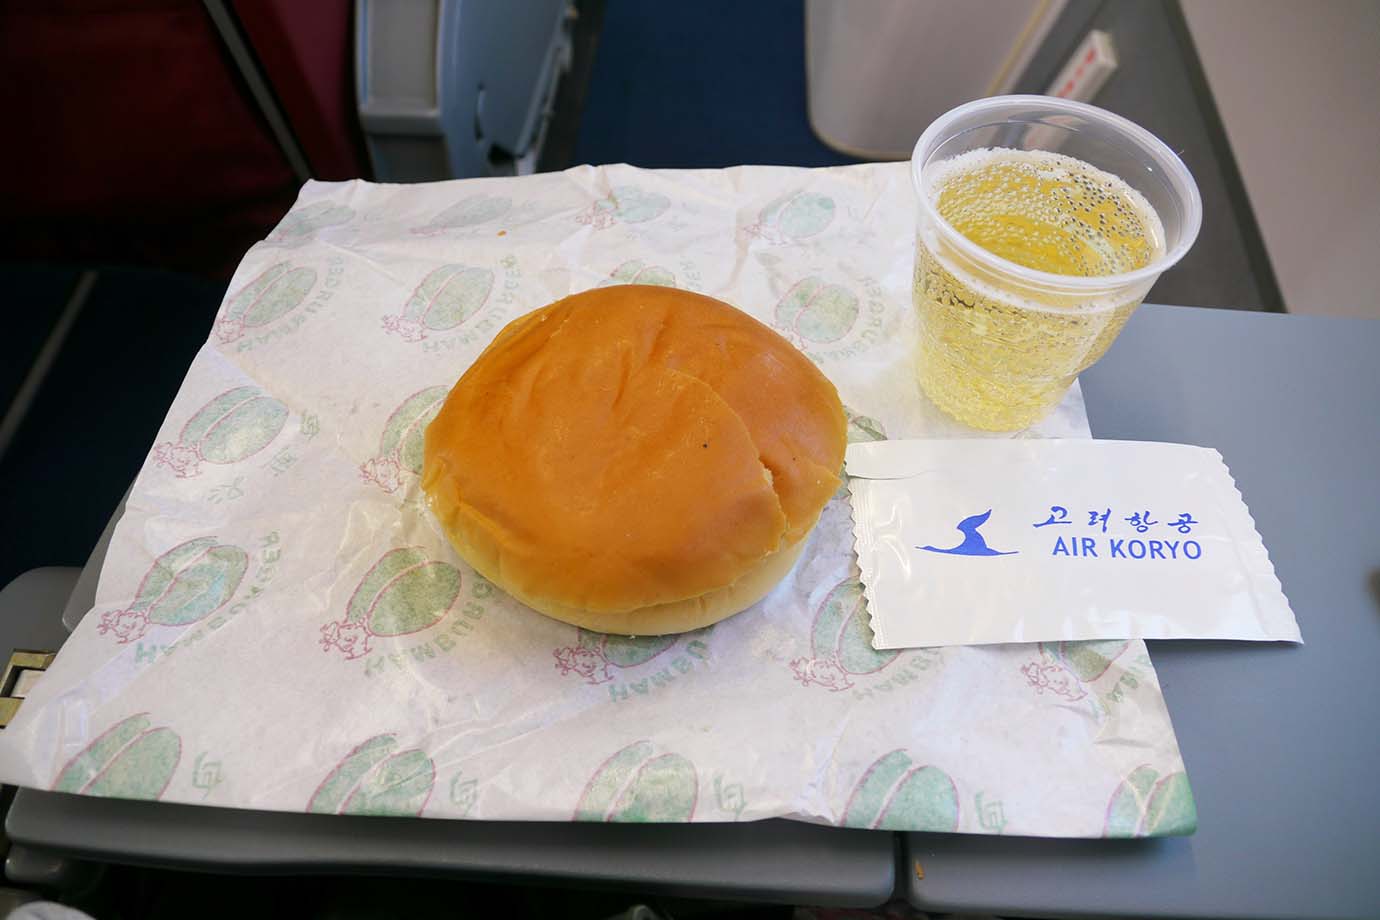 北朝鮮の航空会社・高麗航空の機内食として出されたハンバーガーについて